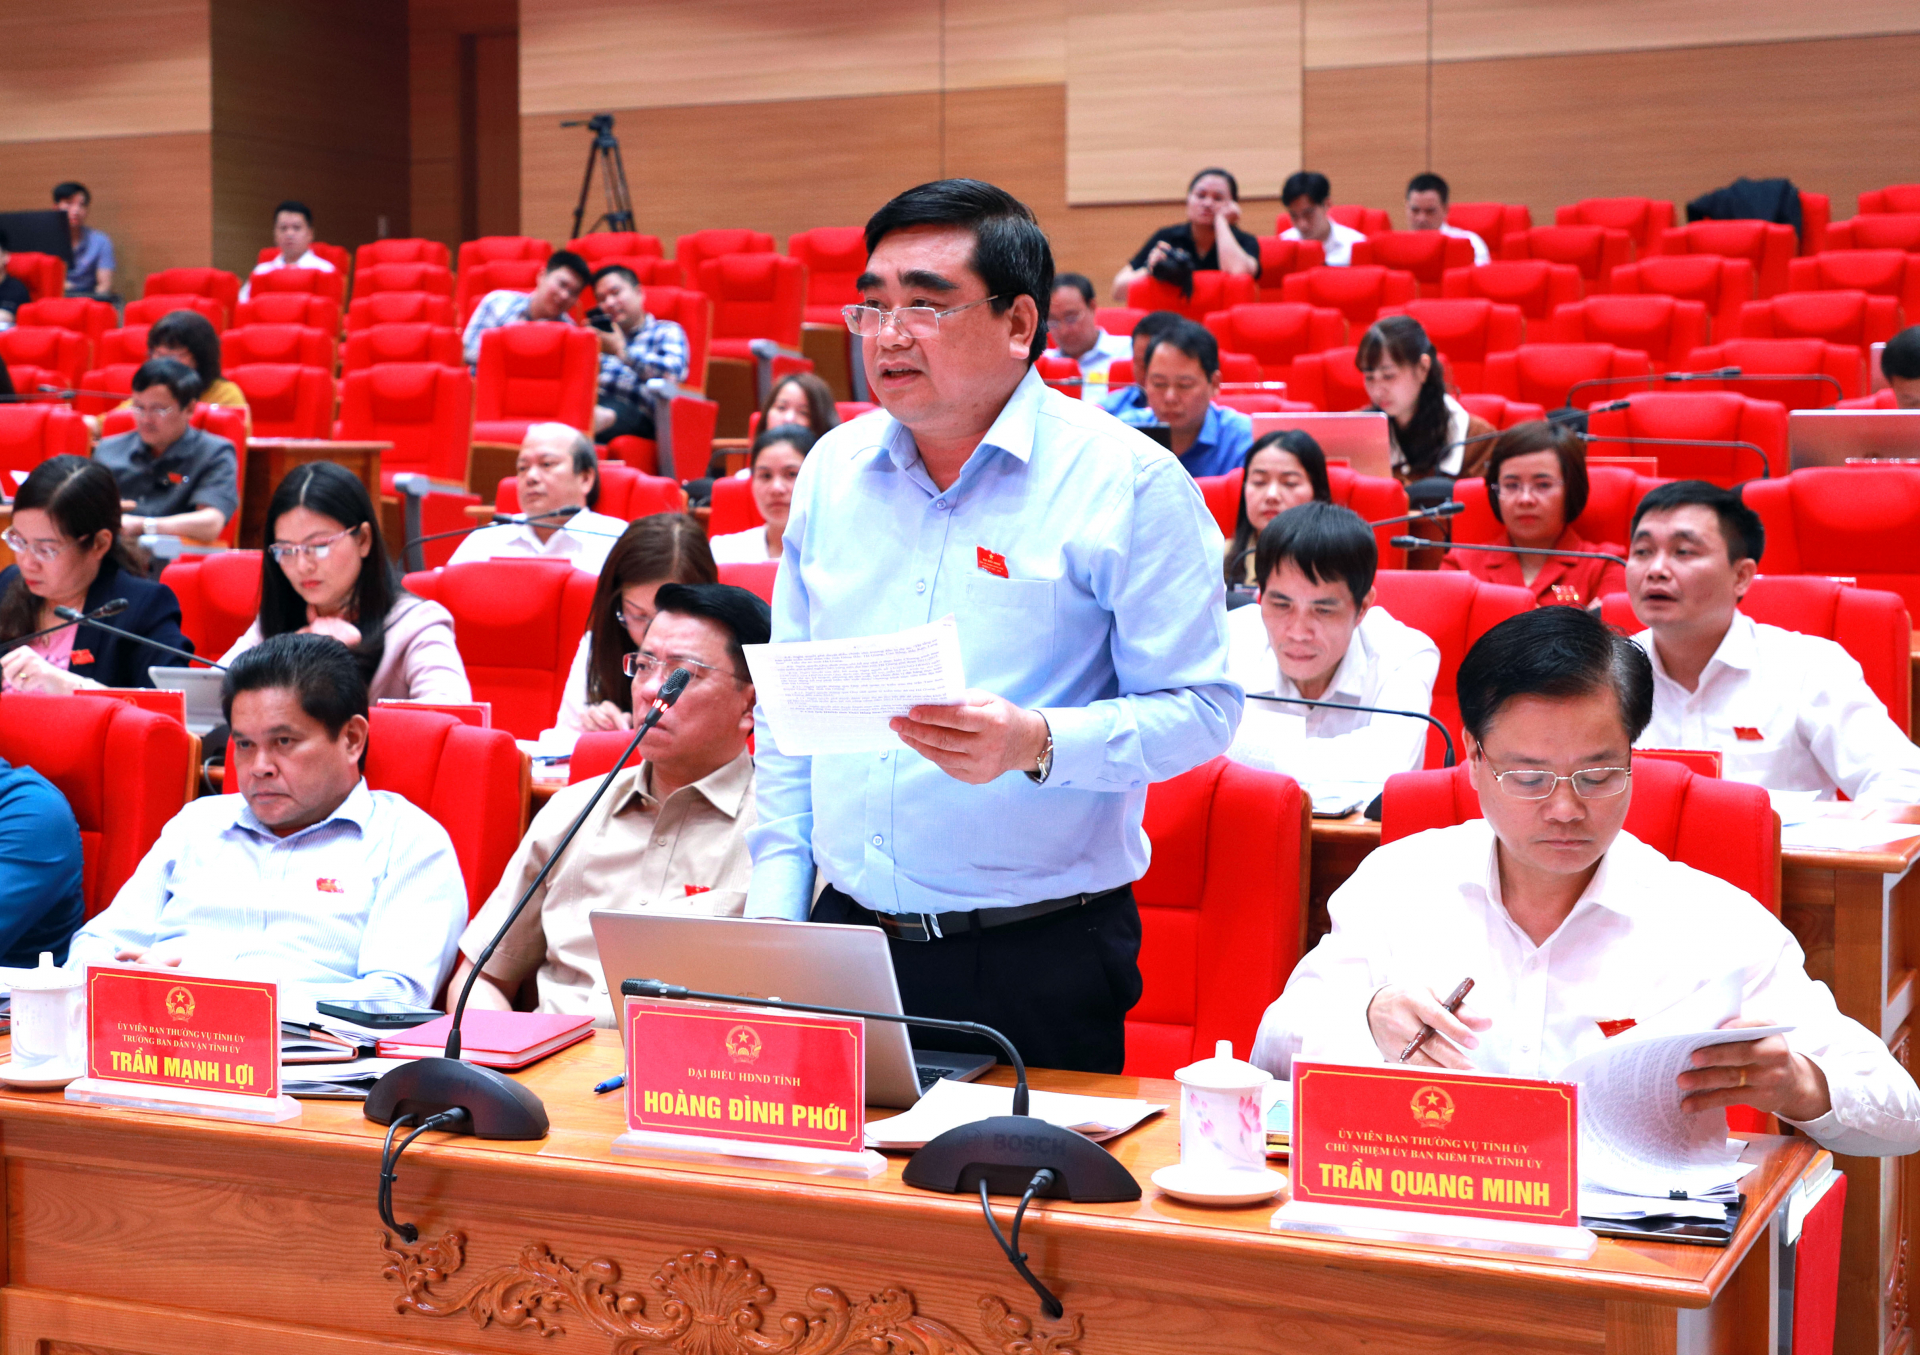 Đại biểu Hoàng Đình Phới, Trưởng ban Nội chính Tỉnh ủy thảo luận tại kỳ họp.